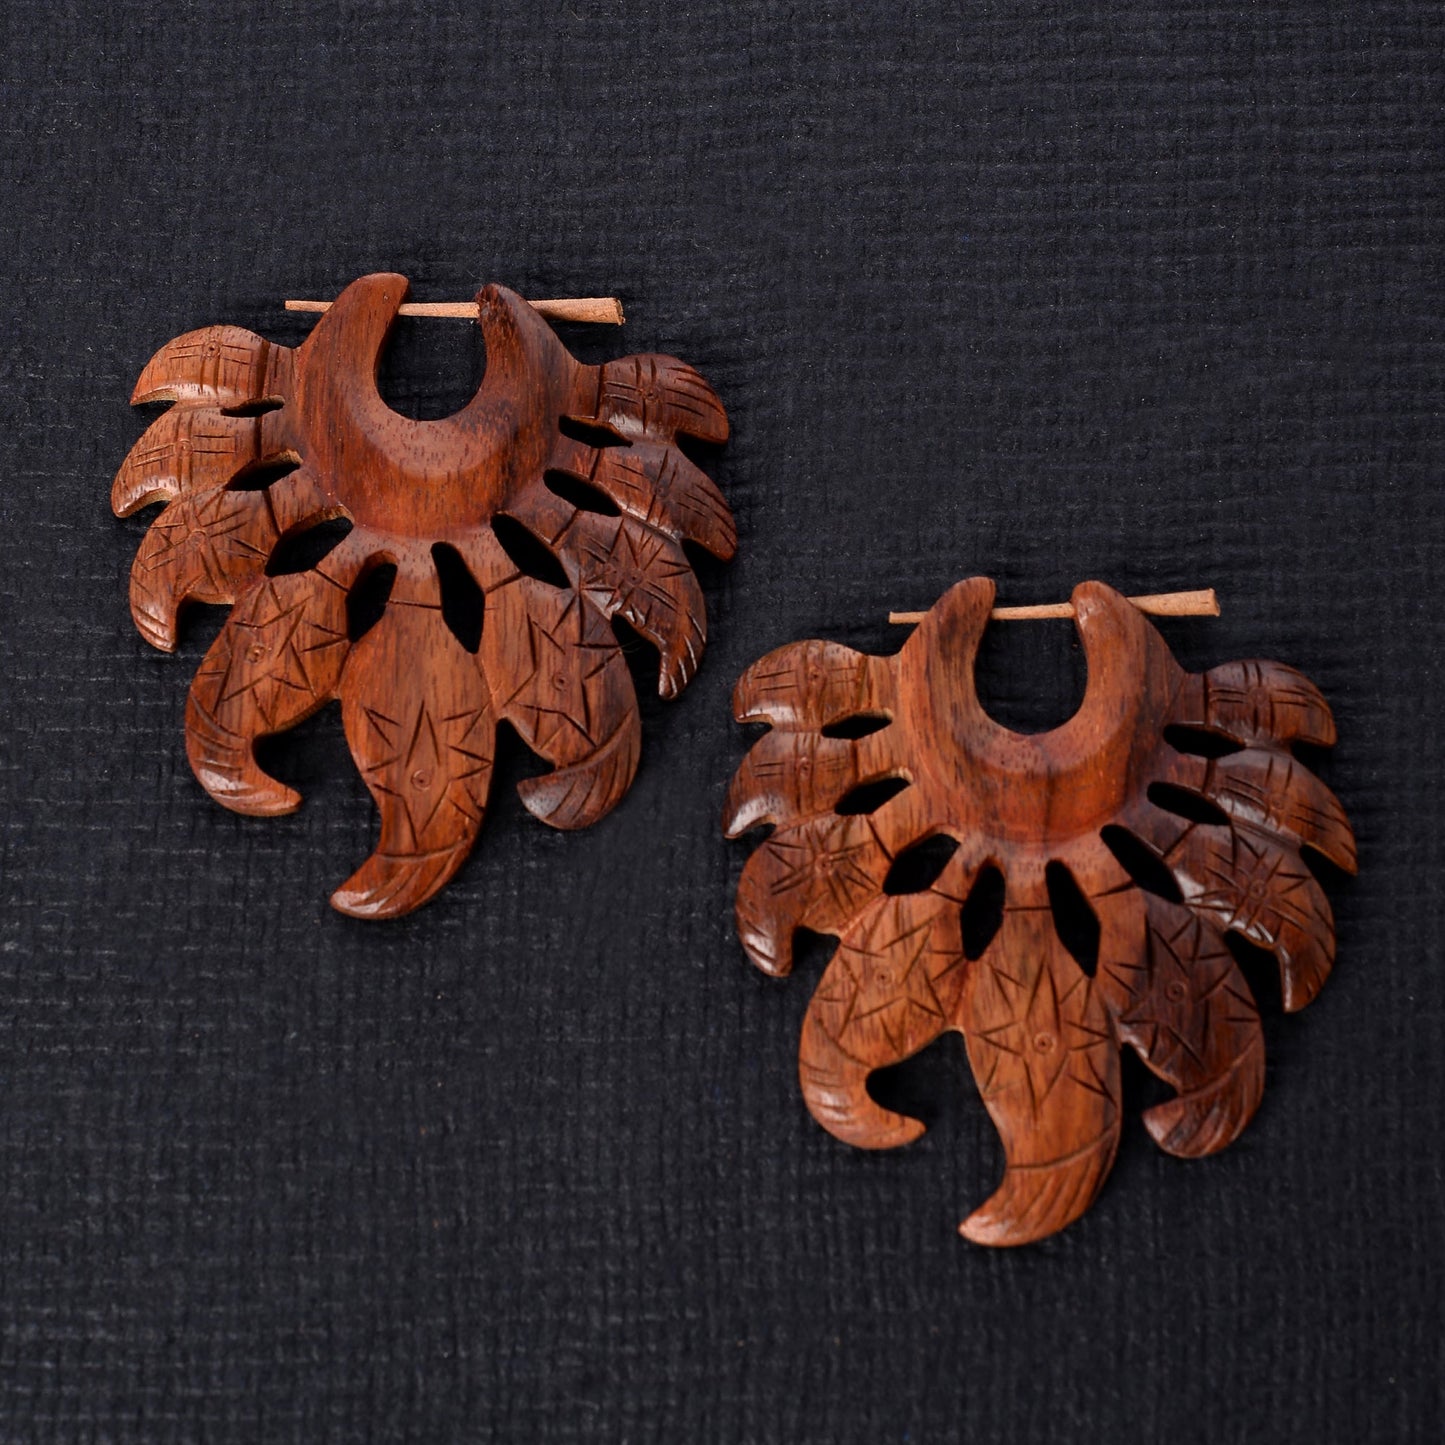 Wooden Loop Earrings